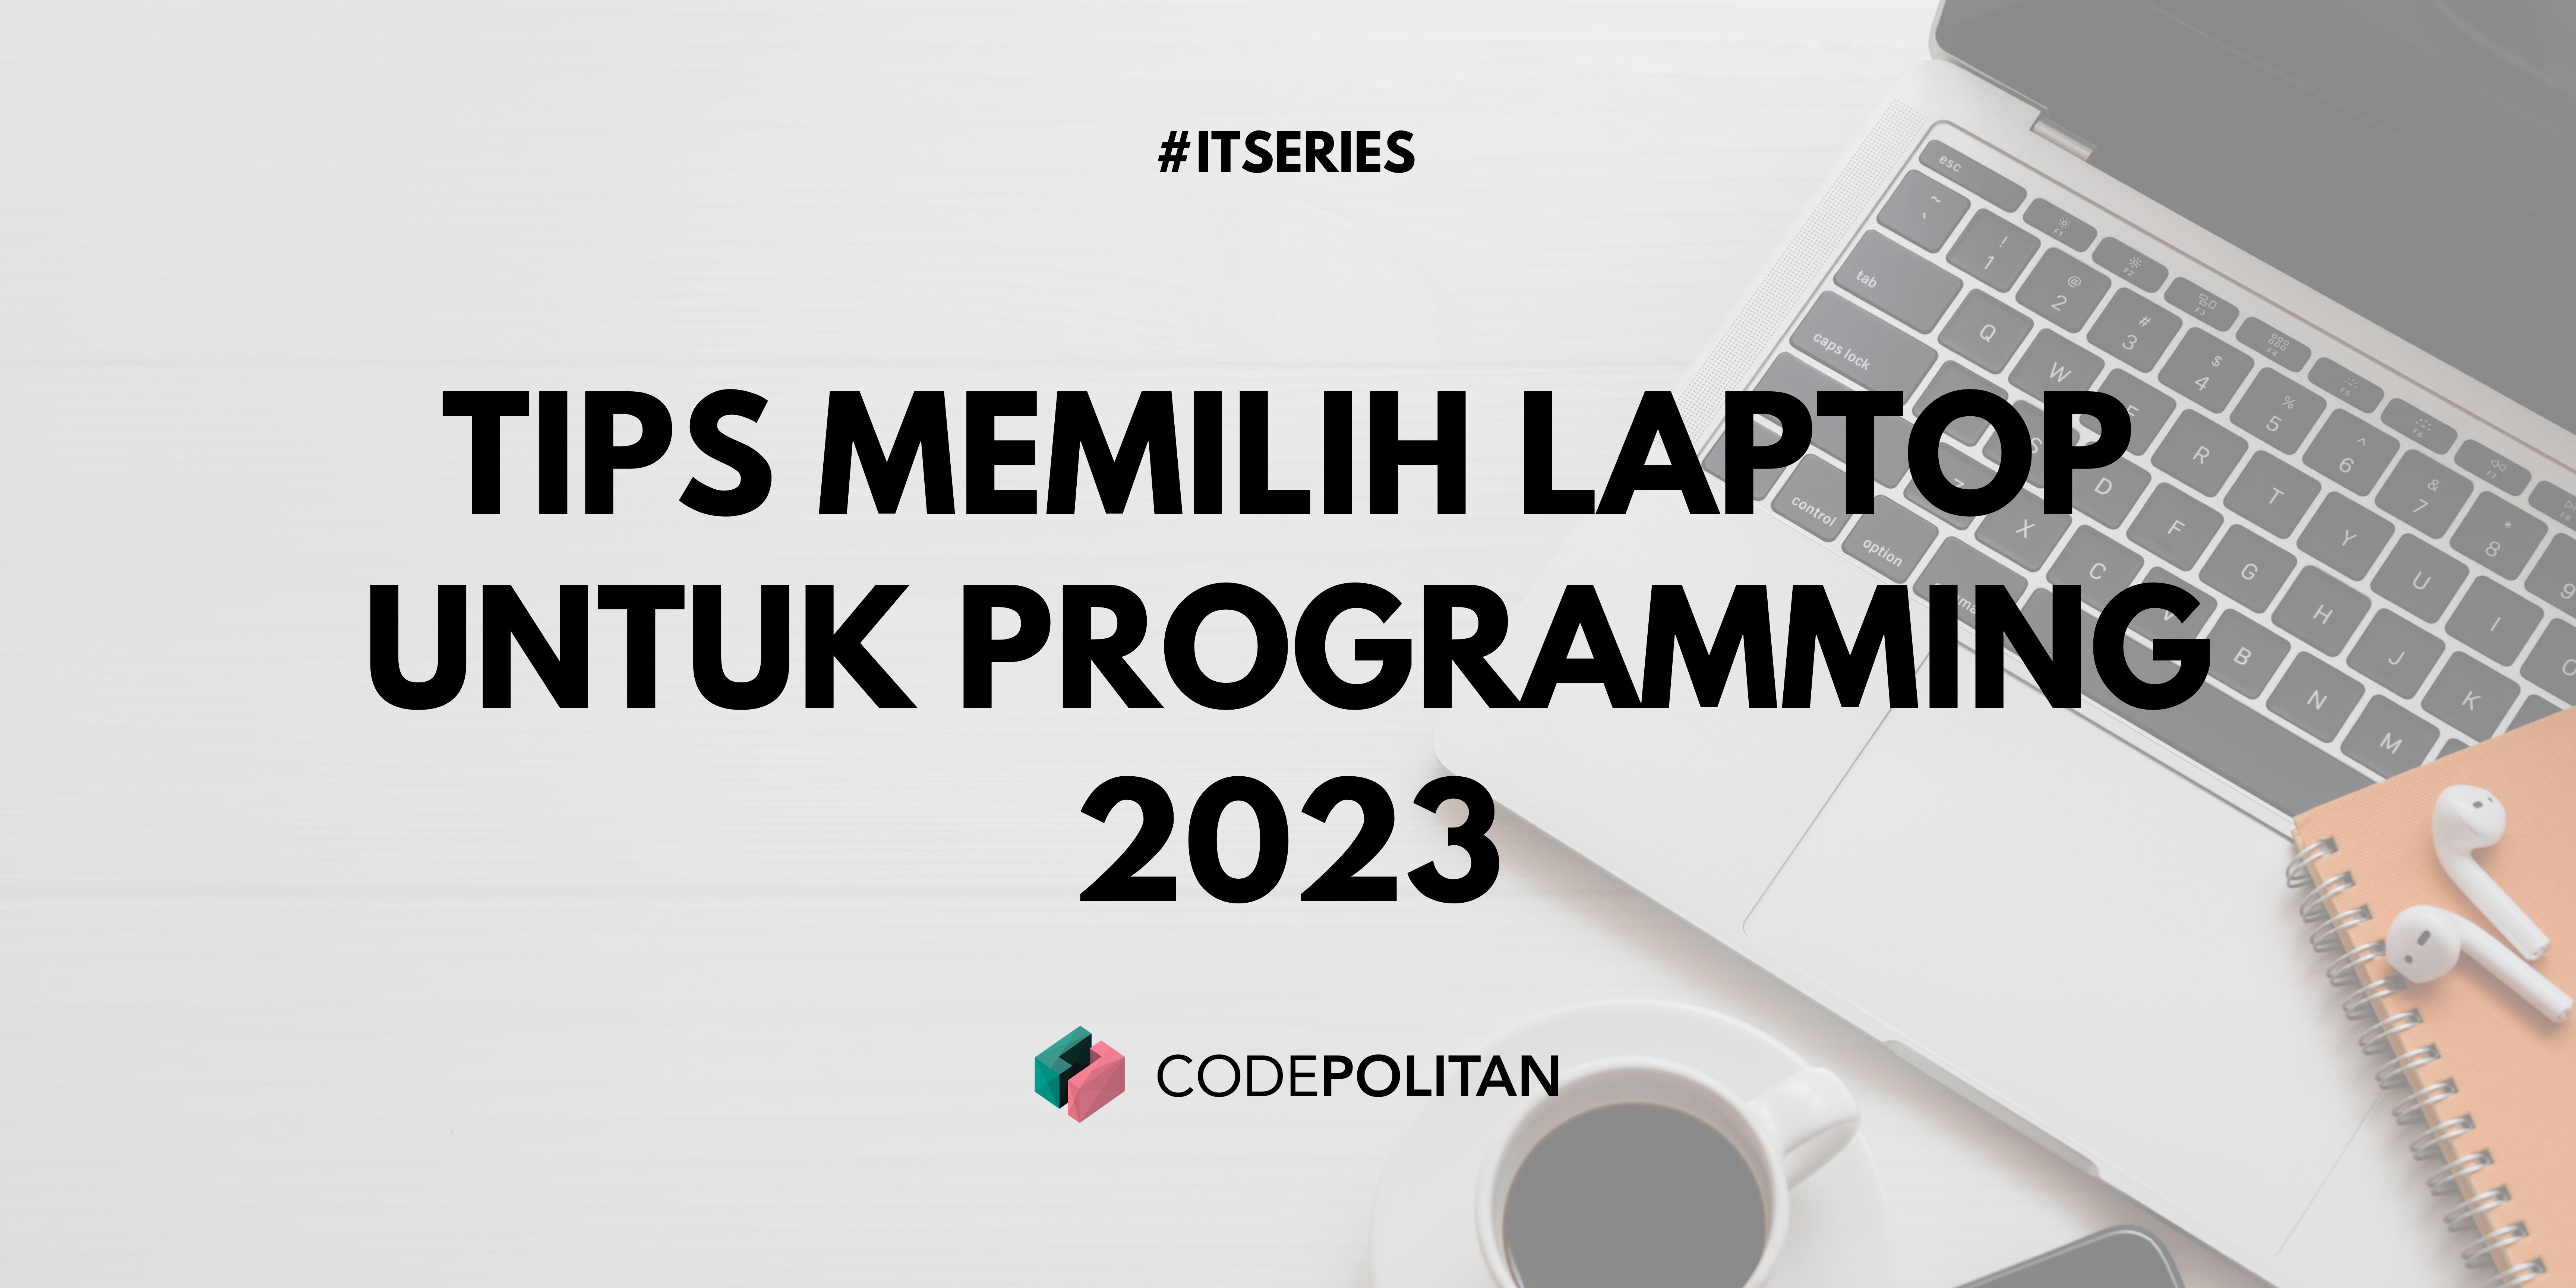 Tips Memilih Laptop untuk Programming 2023 